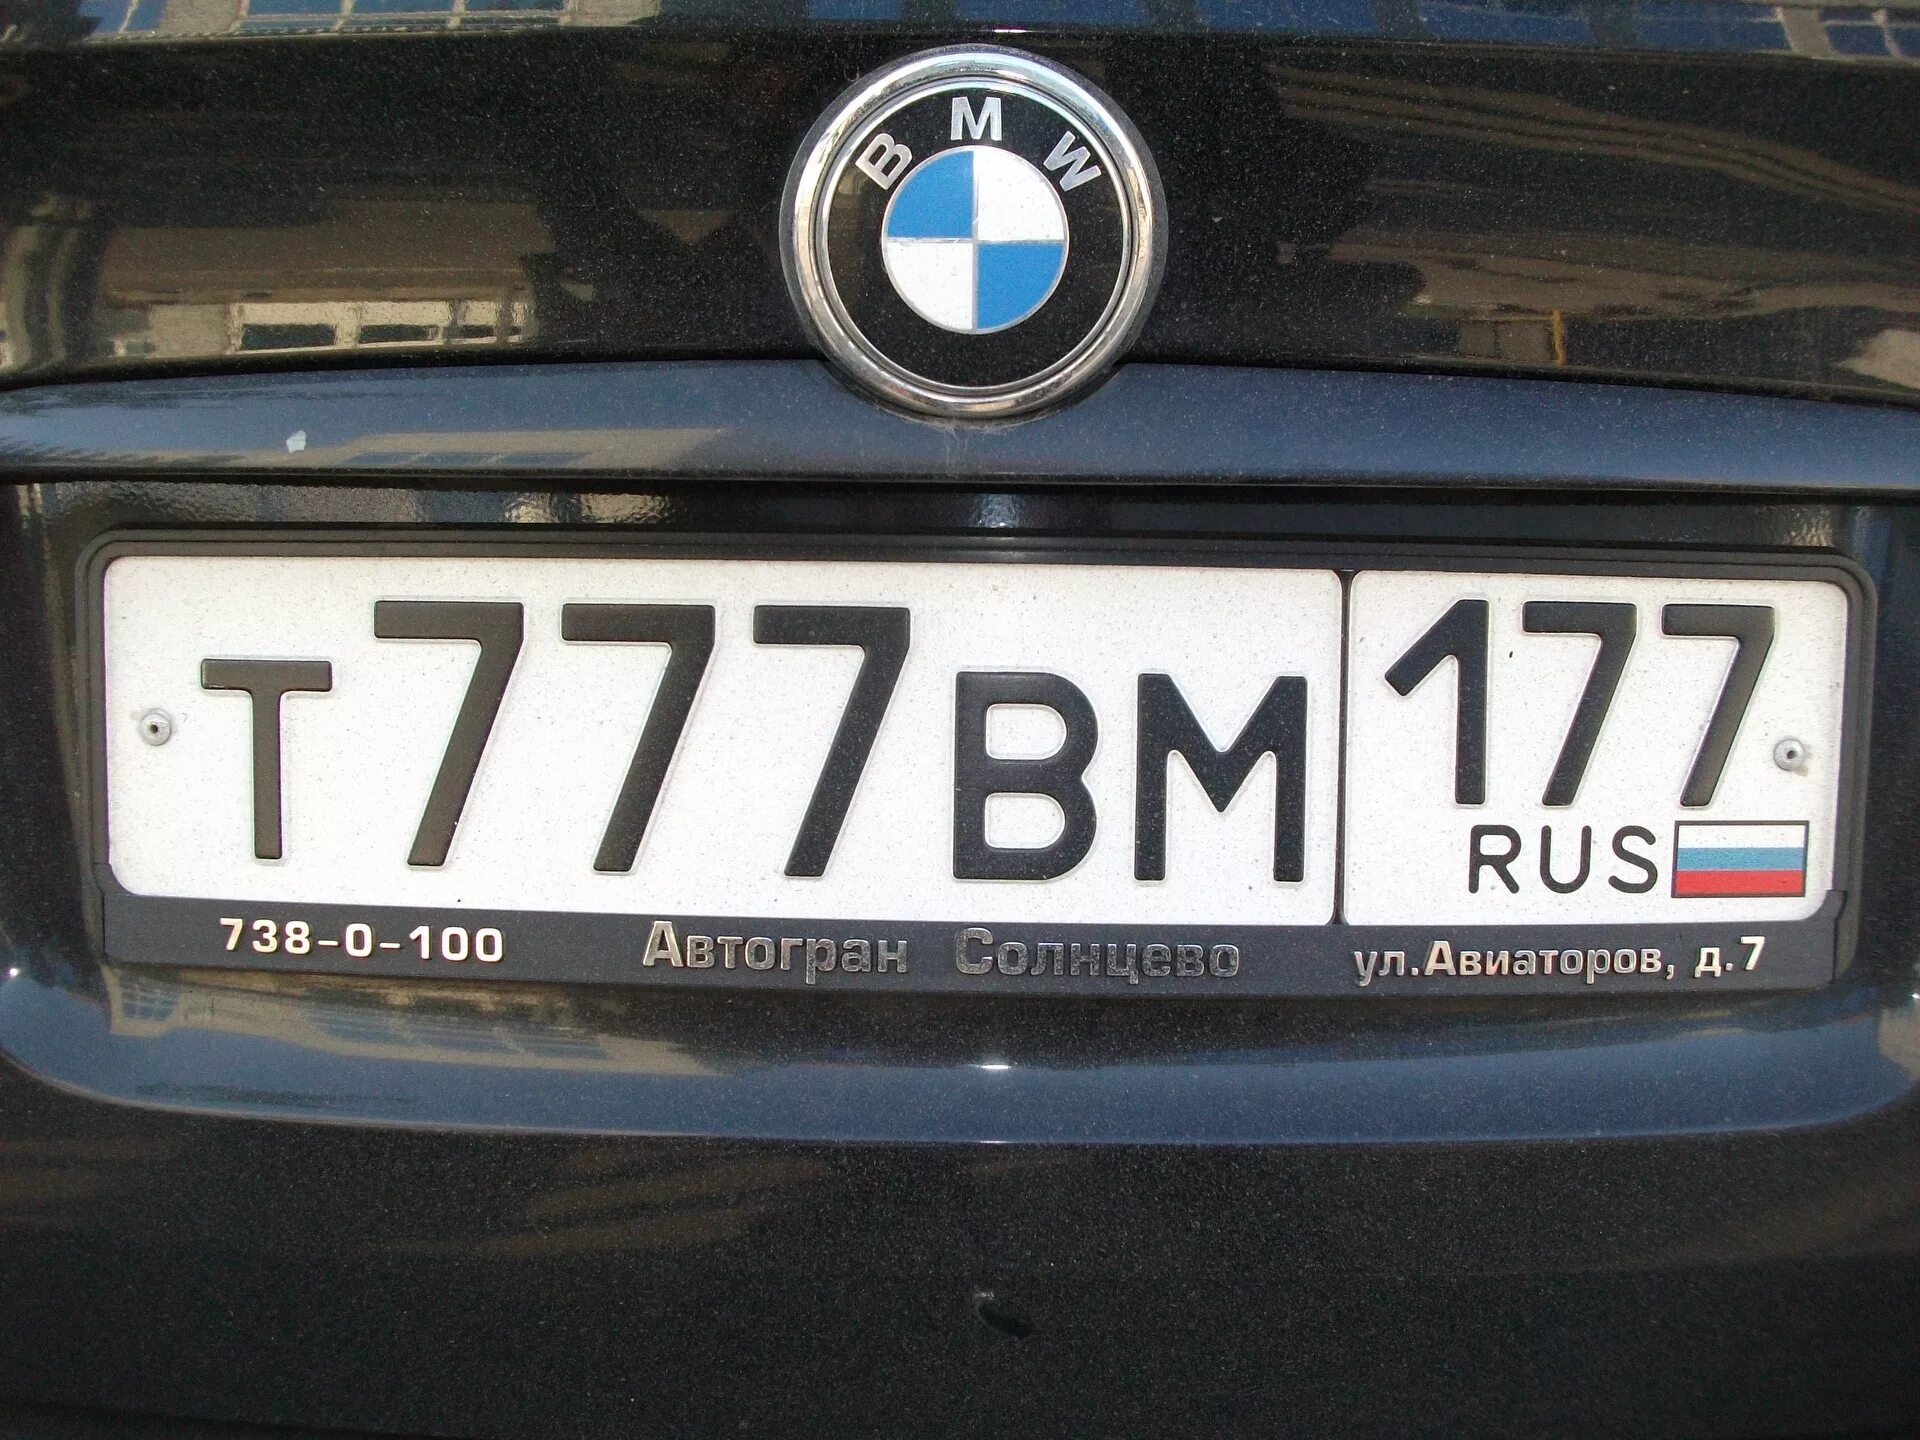 Номера машин. Номерной знак автомобиля. Российские номера. Российские номера машин. Включи номера машин